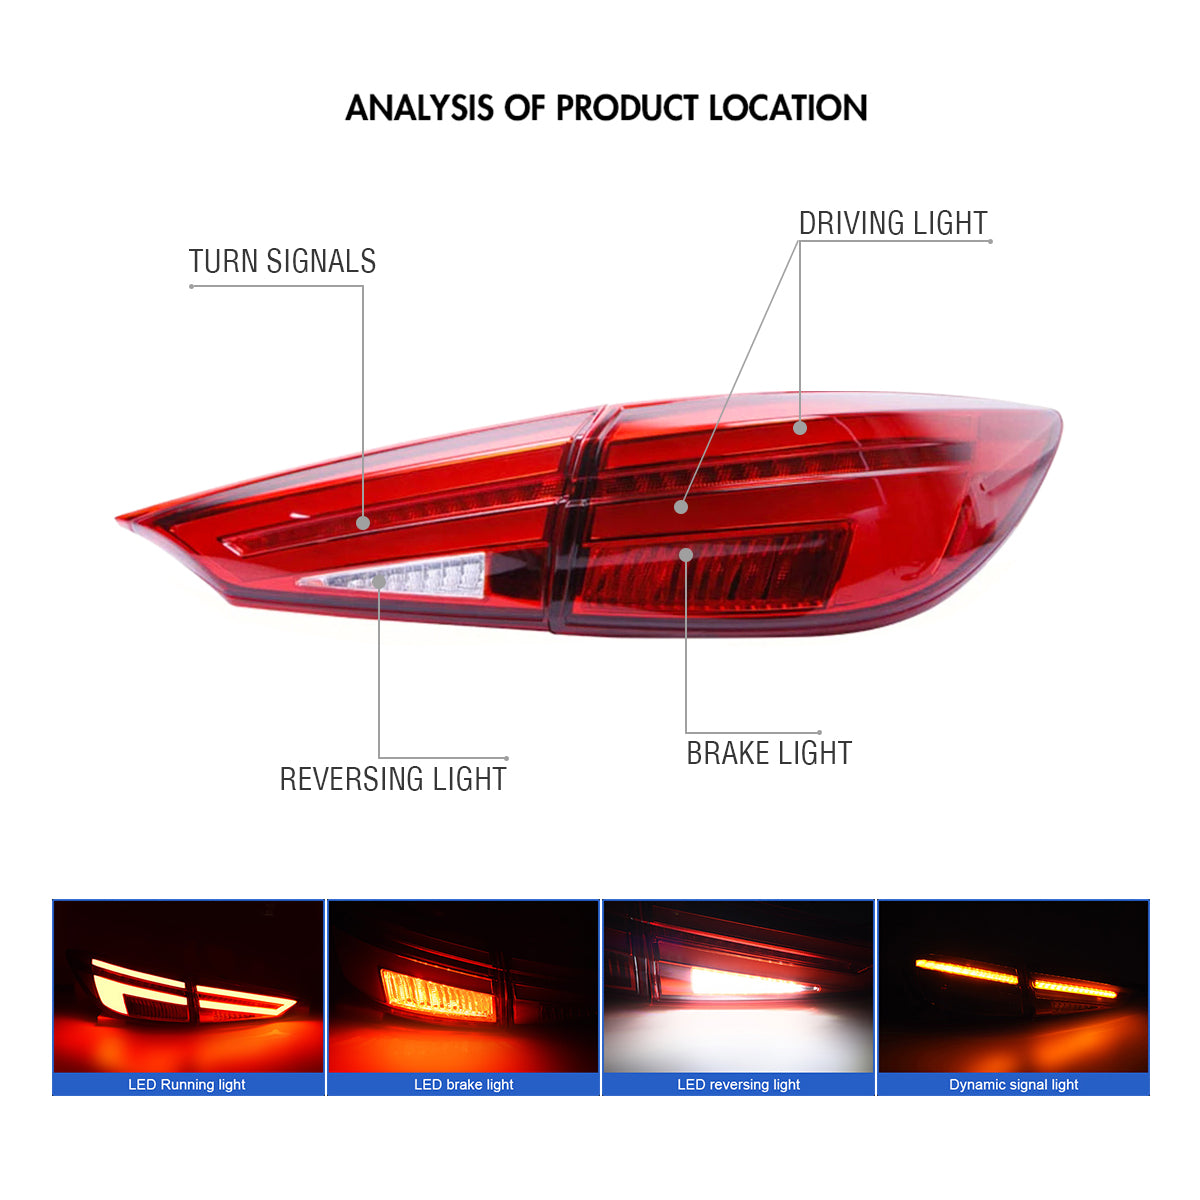 Para 2014-2018 Mazda 3 Axela Led luces traseras, inicio animación continuo luces indicadoras traseras Luces ensamblaje